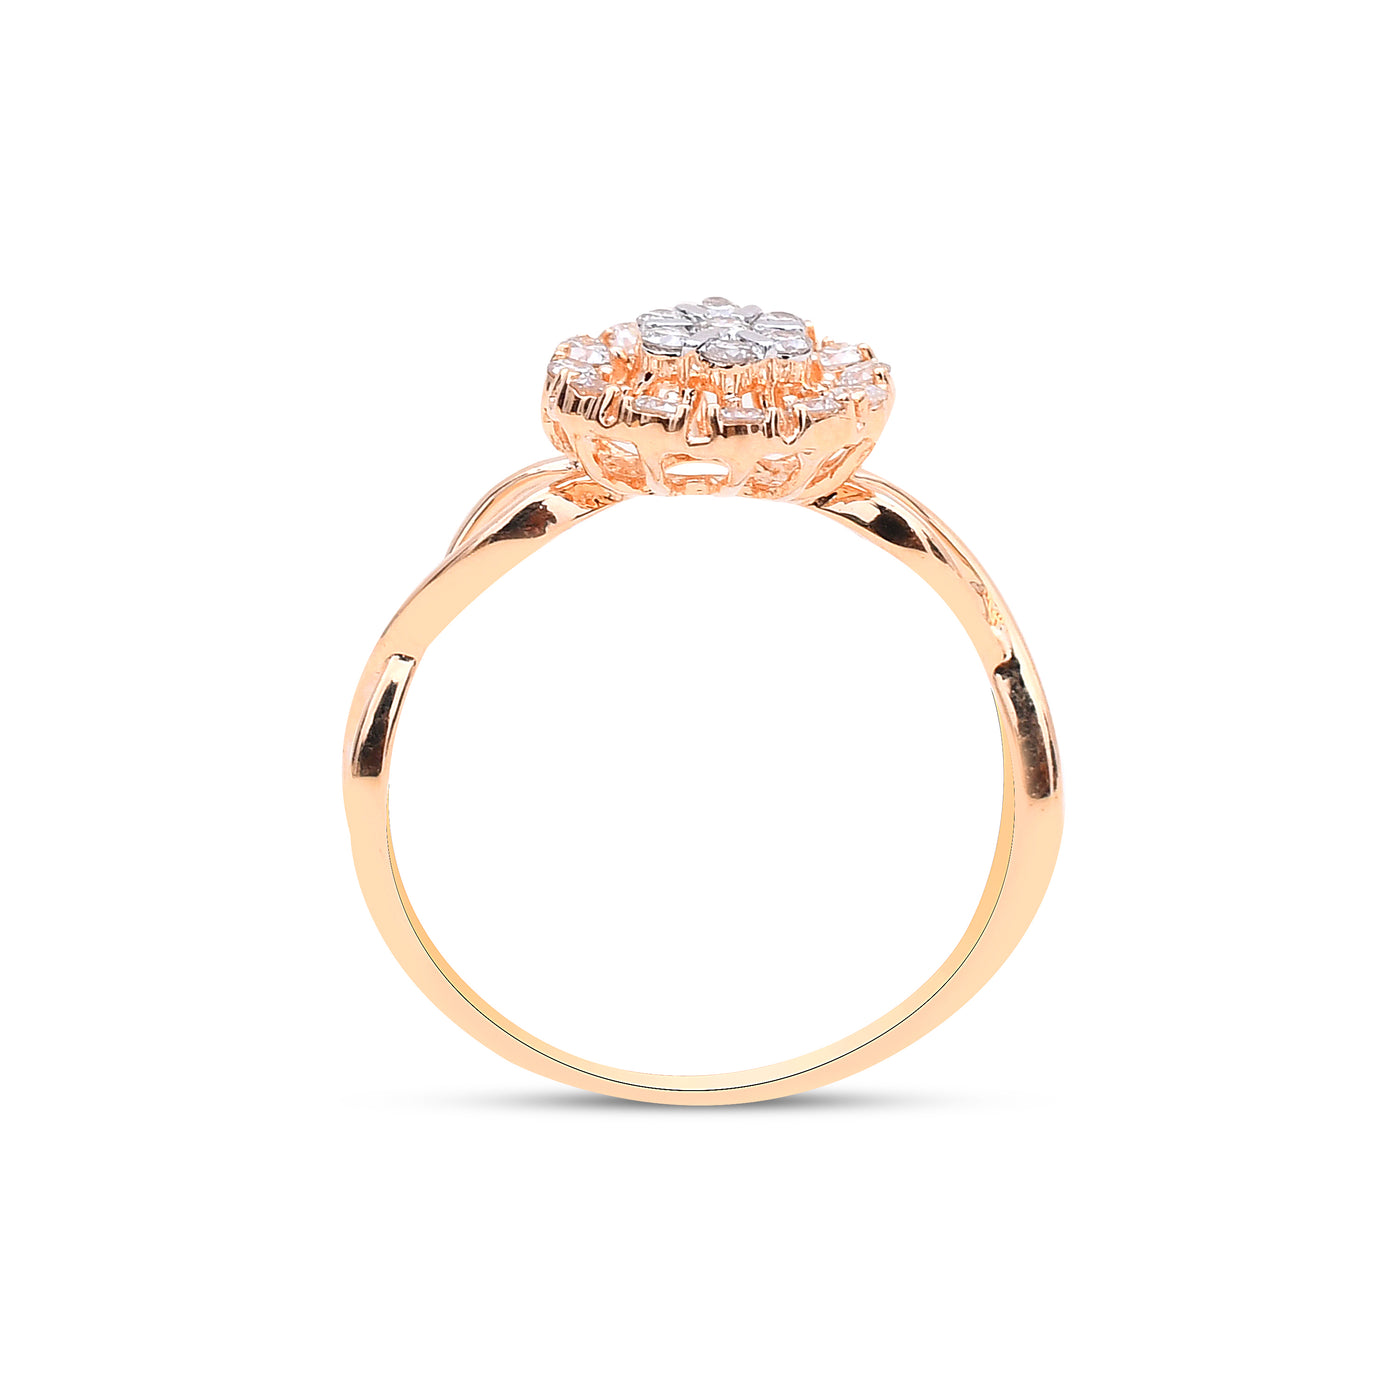 The Dahlia Diamond Ring